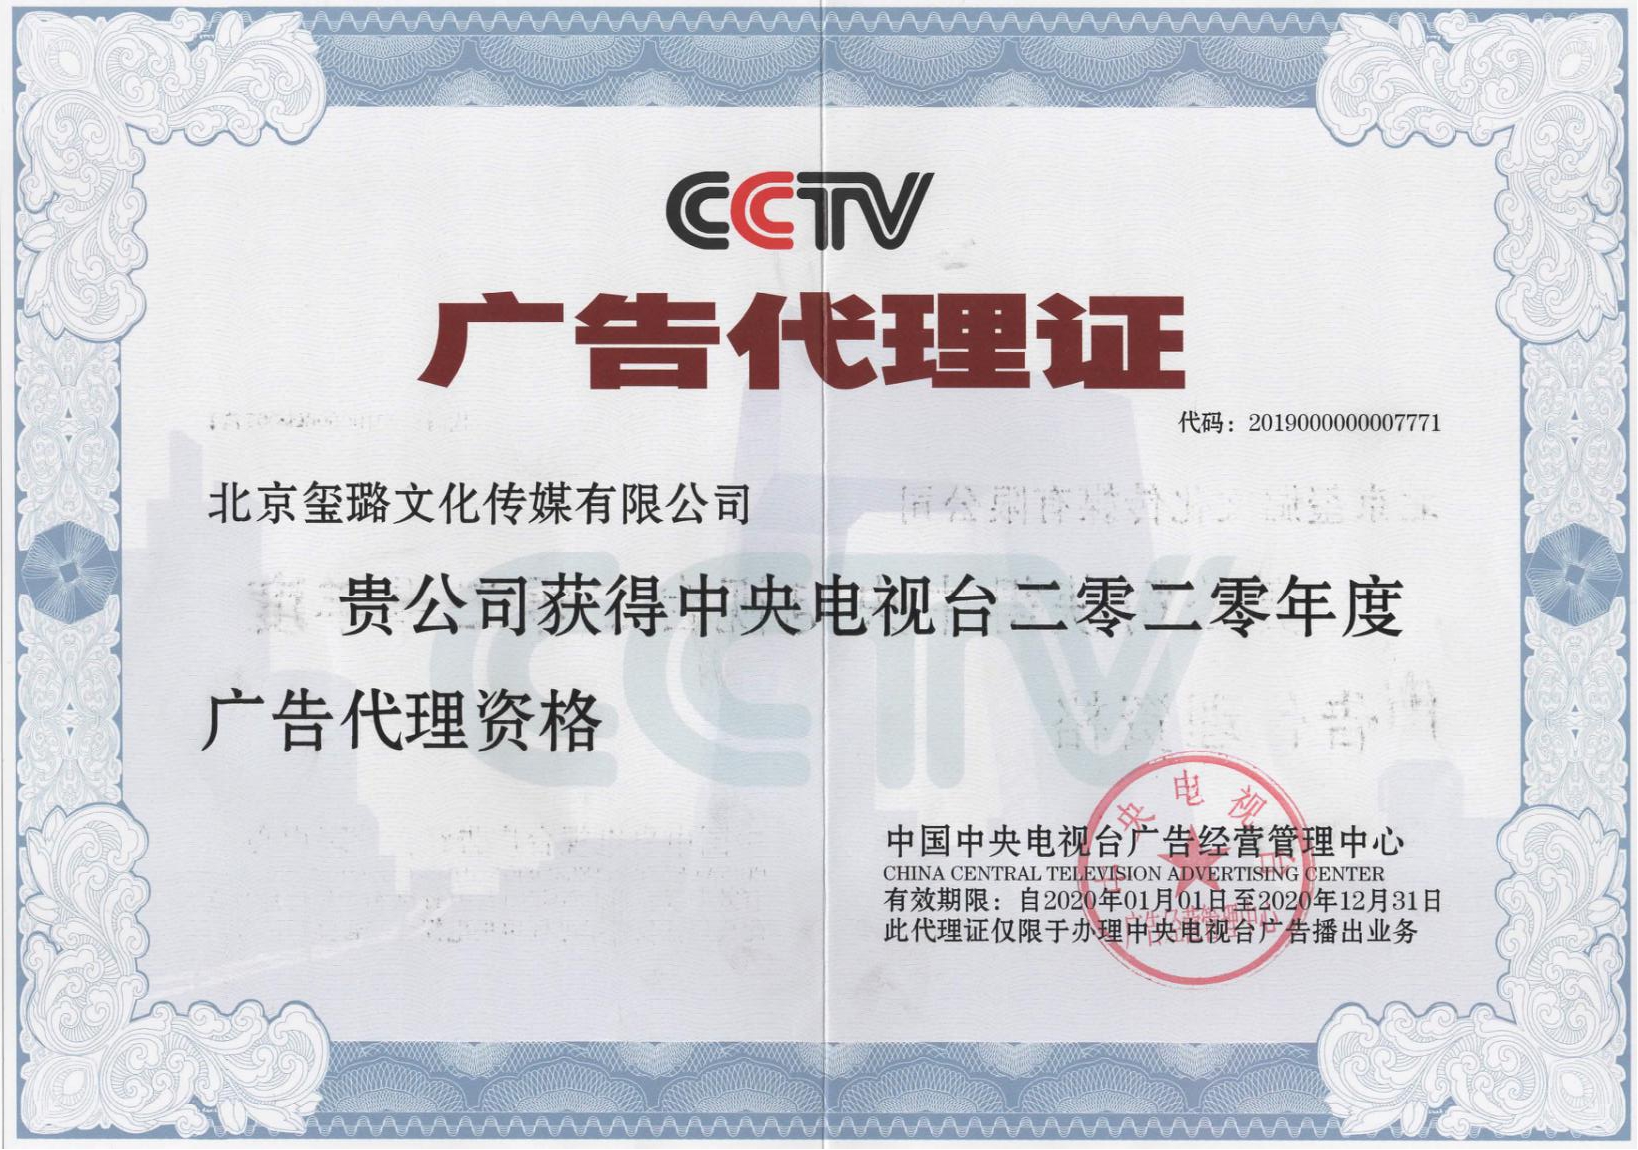 浙江科恩电器在央视广告代理玺璐文化传播推荐下，登录国家媒体中央电视台频道CCTV4播出